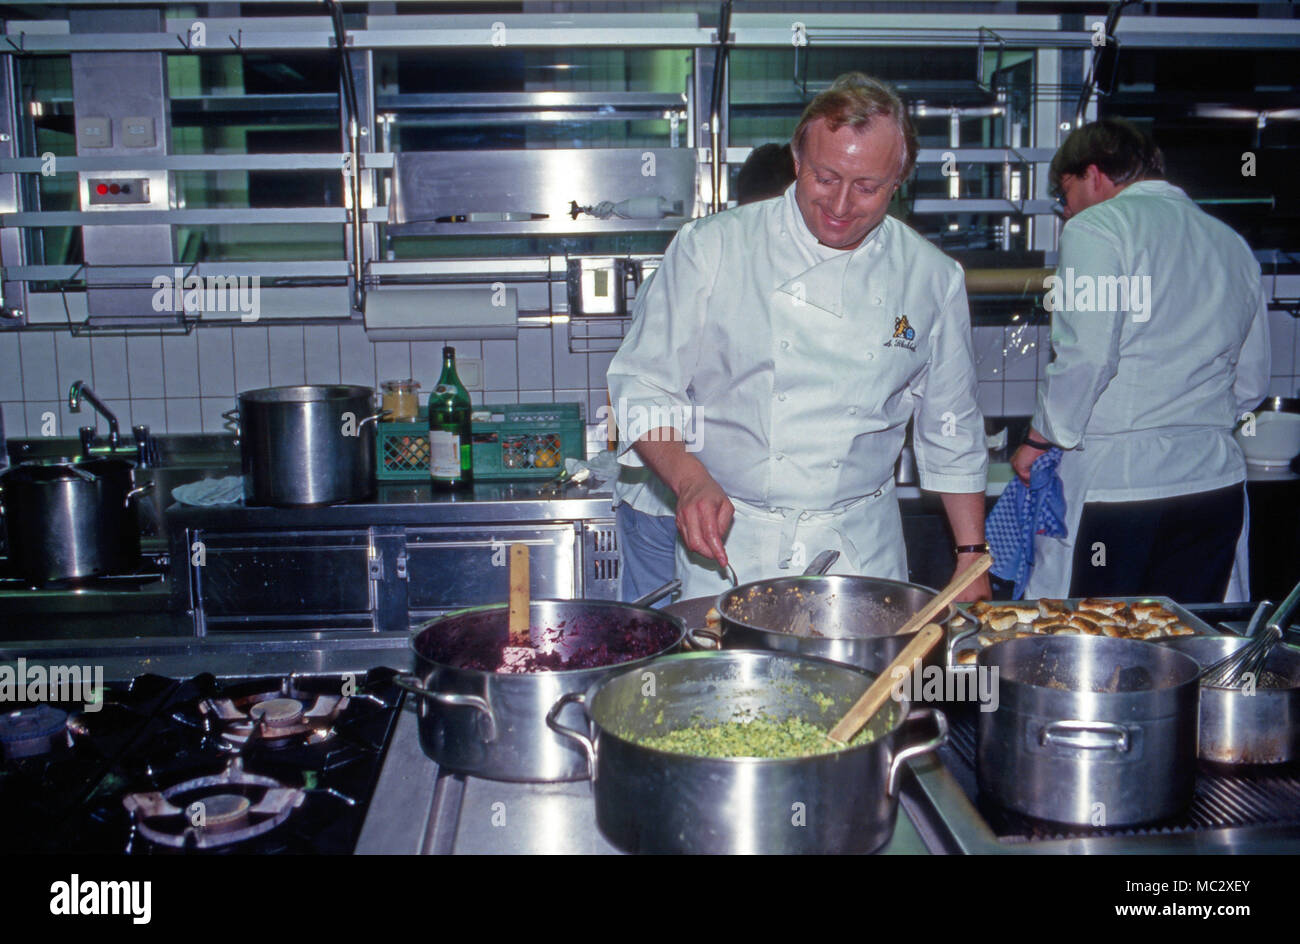 Sternekoch Alfons Schuhbeck kocht bei einem 206 von Prinz Charles in Deutschland, 2004. Sternekoch Alfons Schuhbeck kochen, während ein königlicher Besuch von Prinz Charles in Deutschland, 2004. Stockfoto